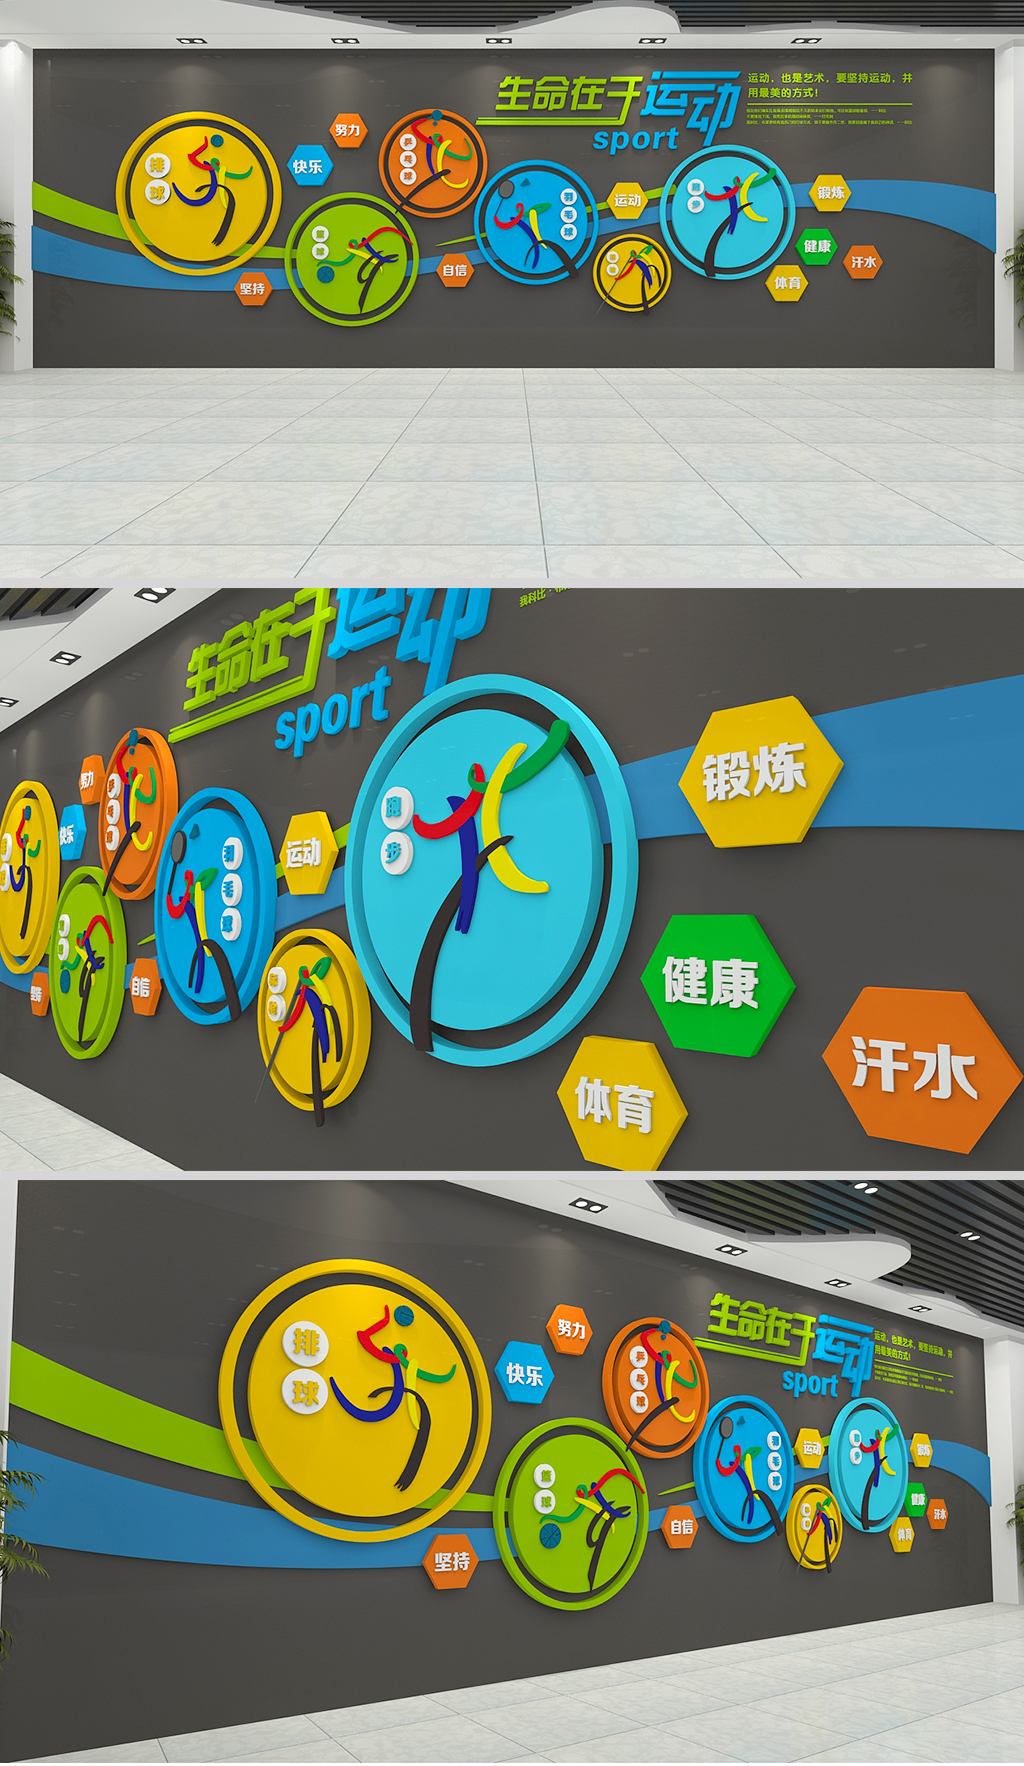 炫彩奥运队排球篮球羽毛球 健身体育运动健身房校园活动室文化墙